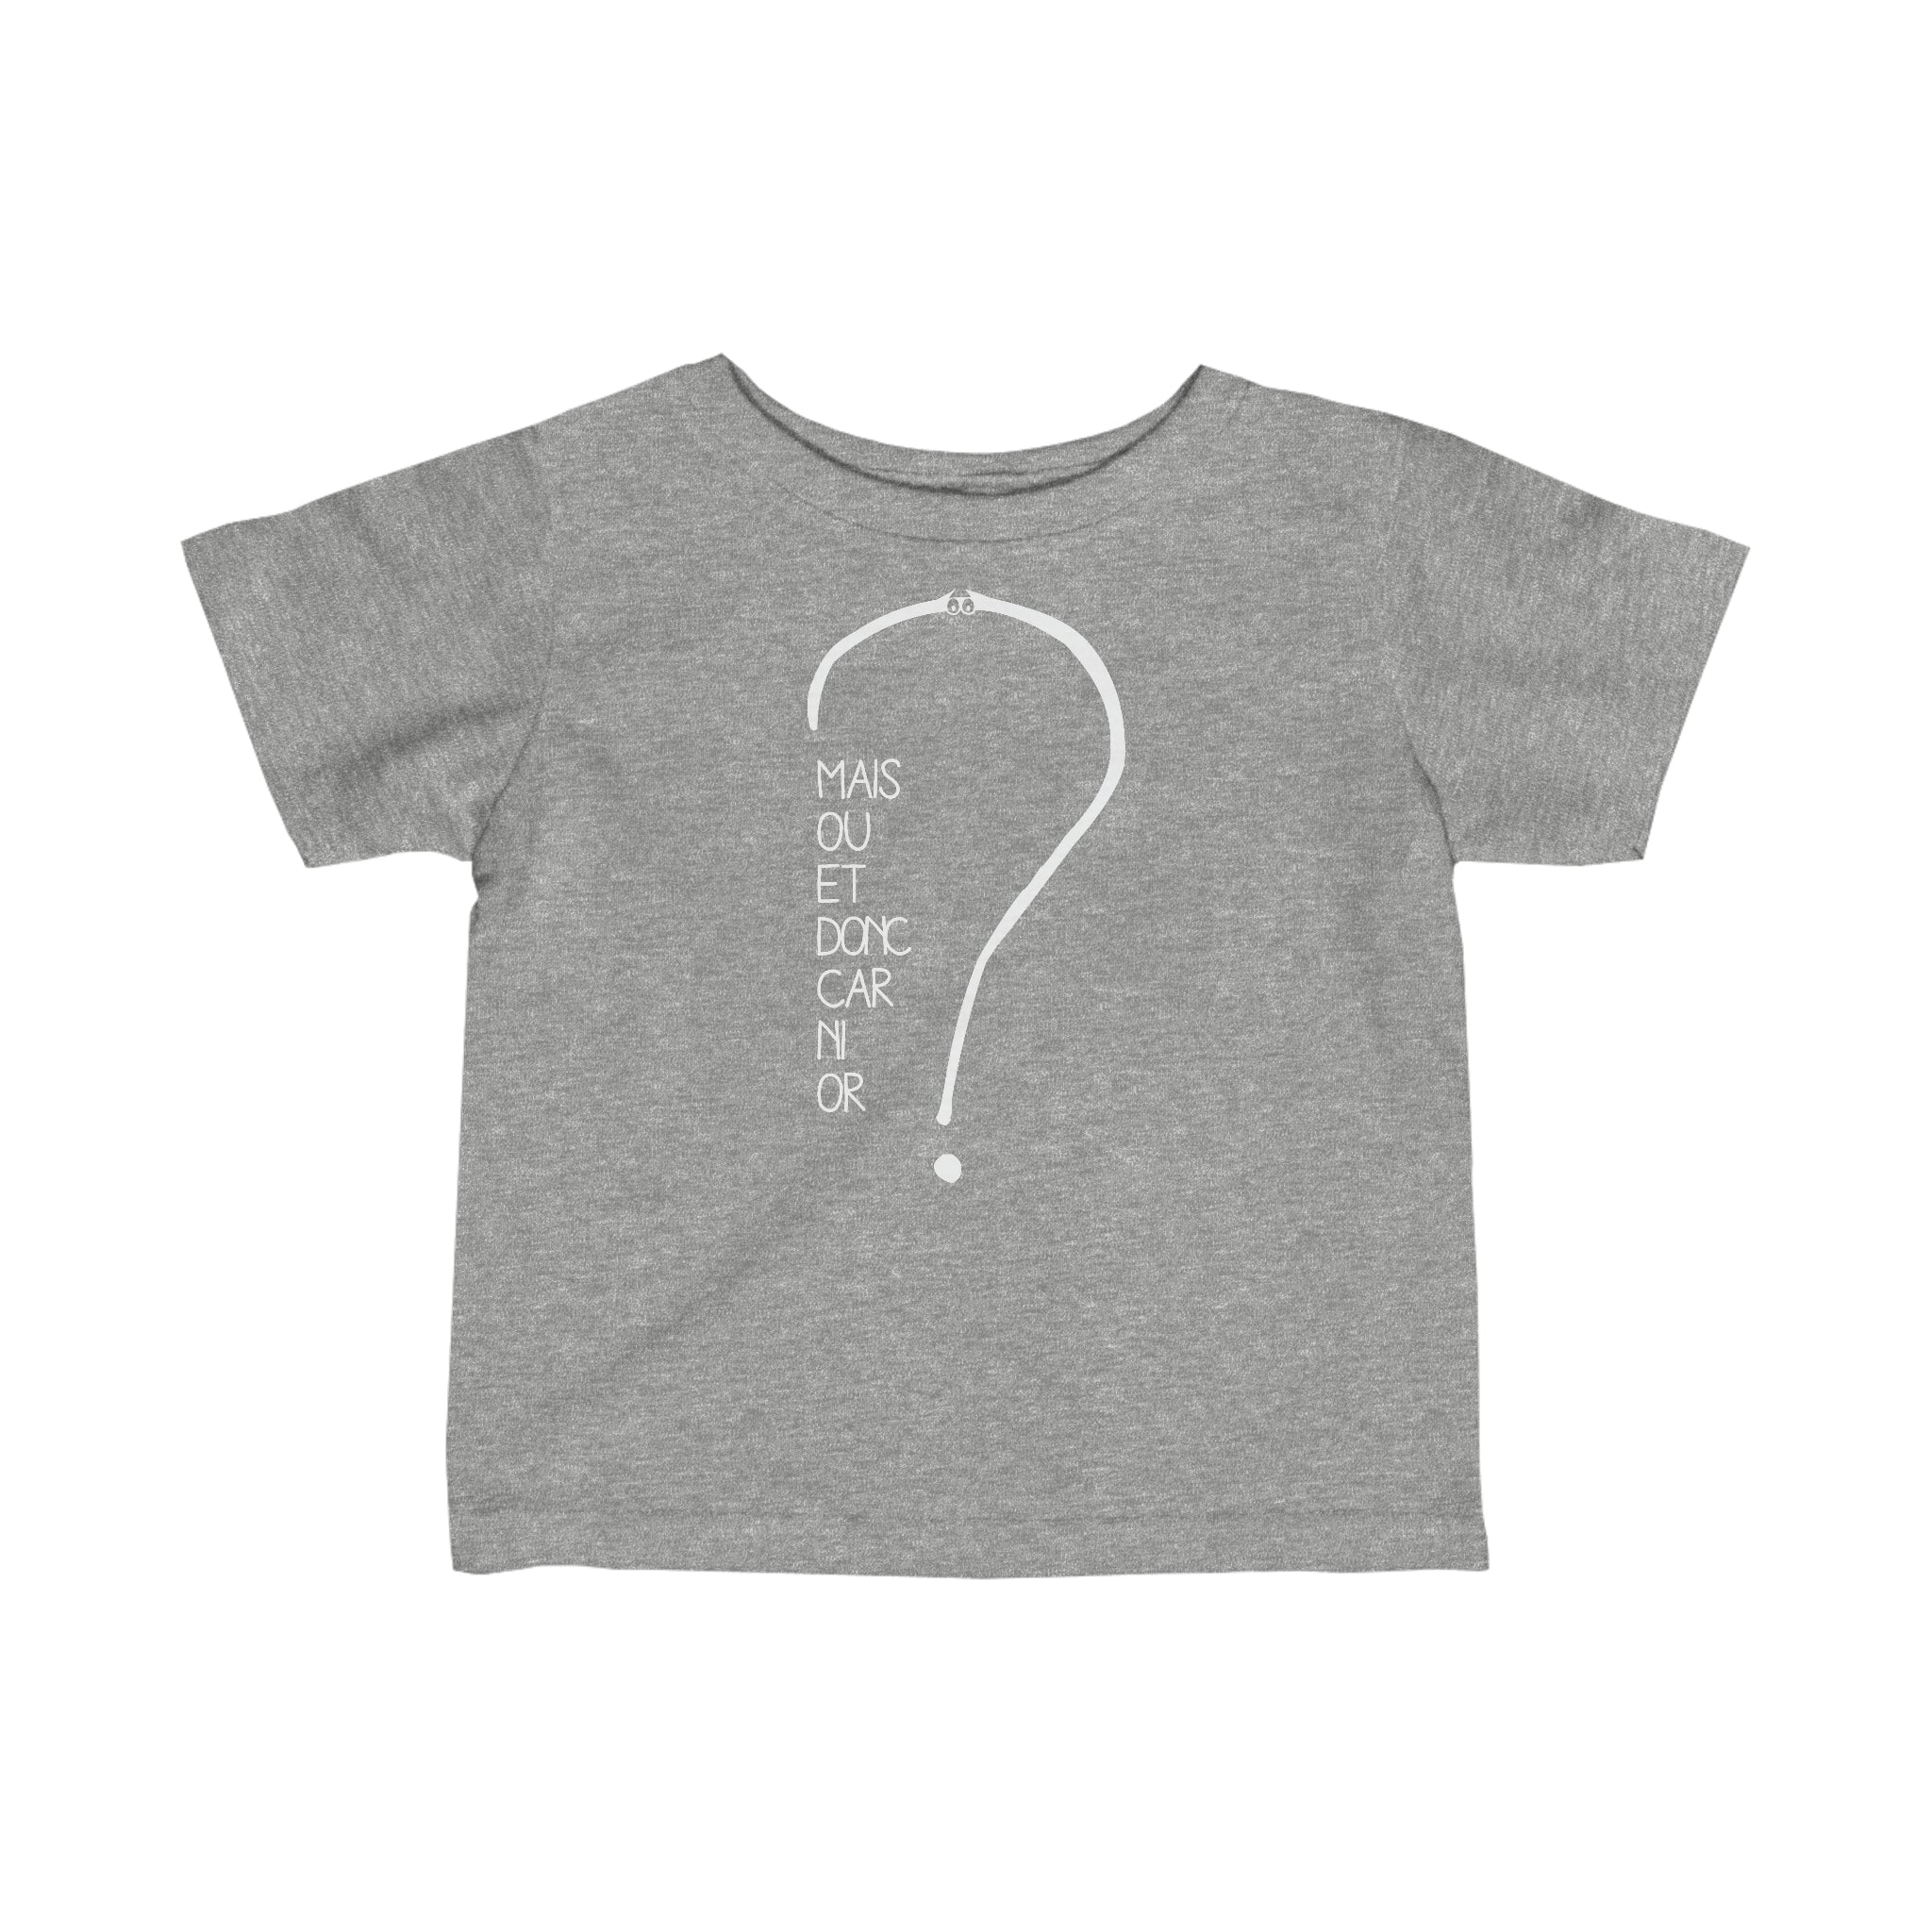 T-shirt pour bébé - Mais où et donc car ni or